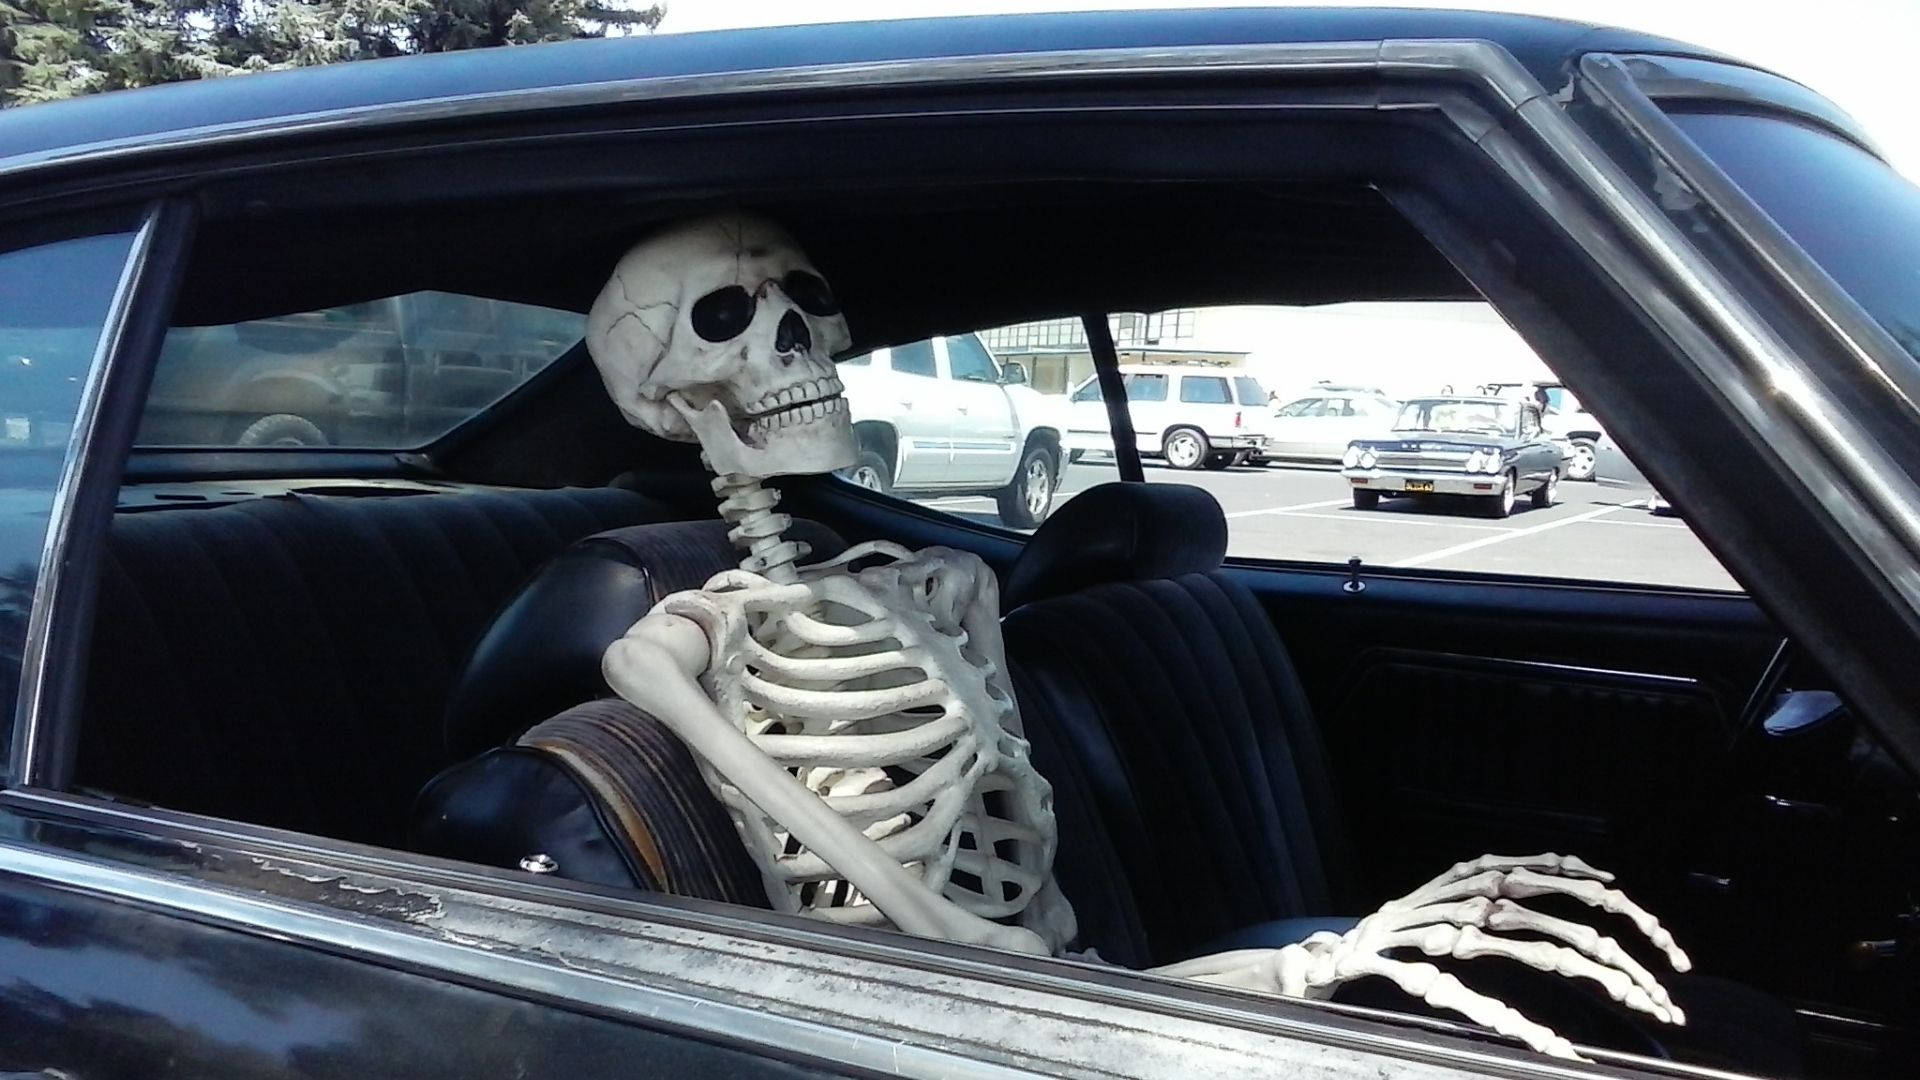 Skeleton Meme In The Car